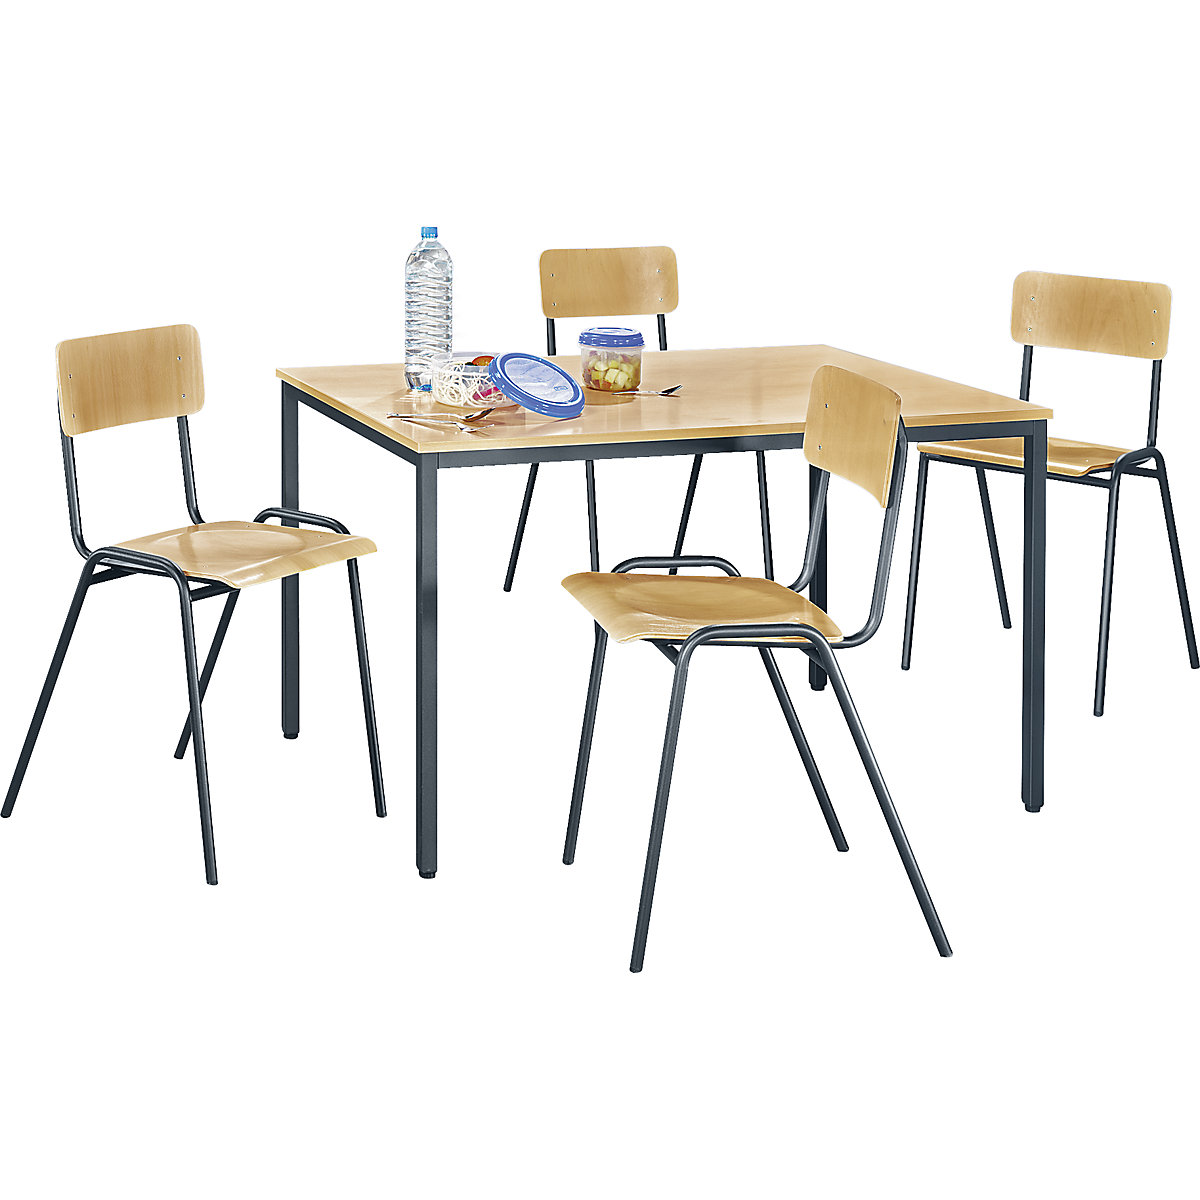 EUROKRAFTbasic Mehrzweck-Sitzgruppe, 1 Tisch, 4 Stühle, Tischplatte Buche-Dekor, Gestell basaltgrau